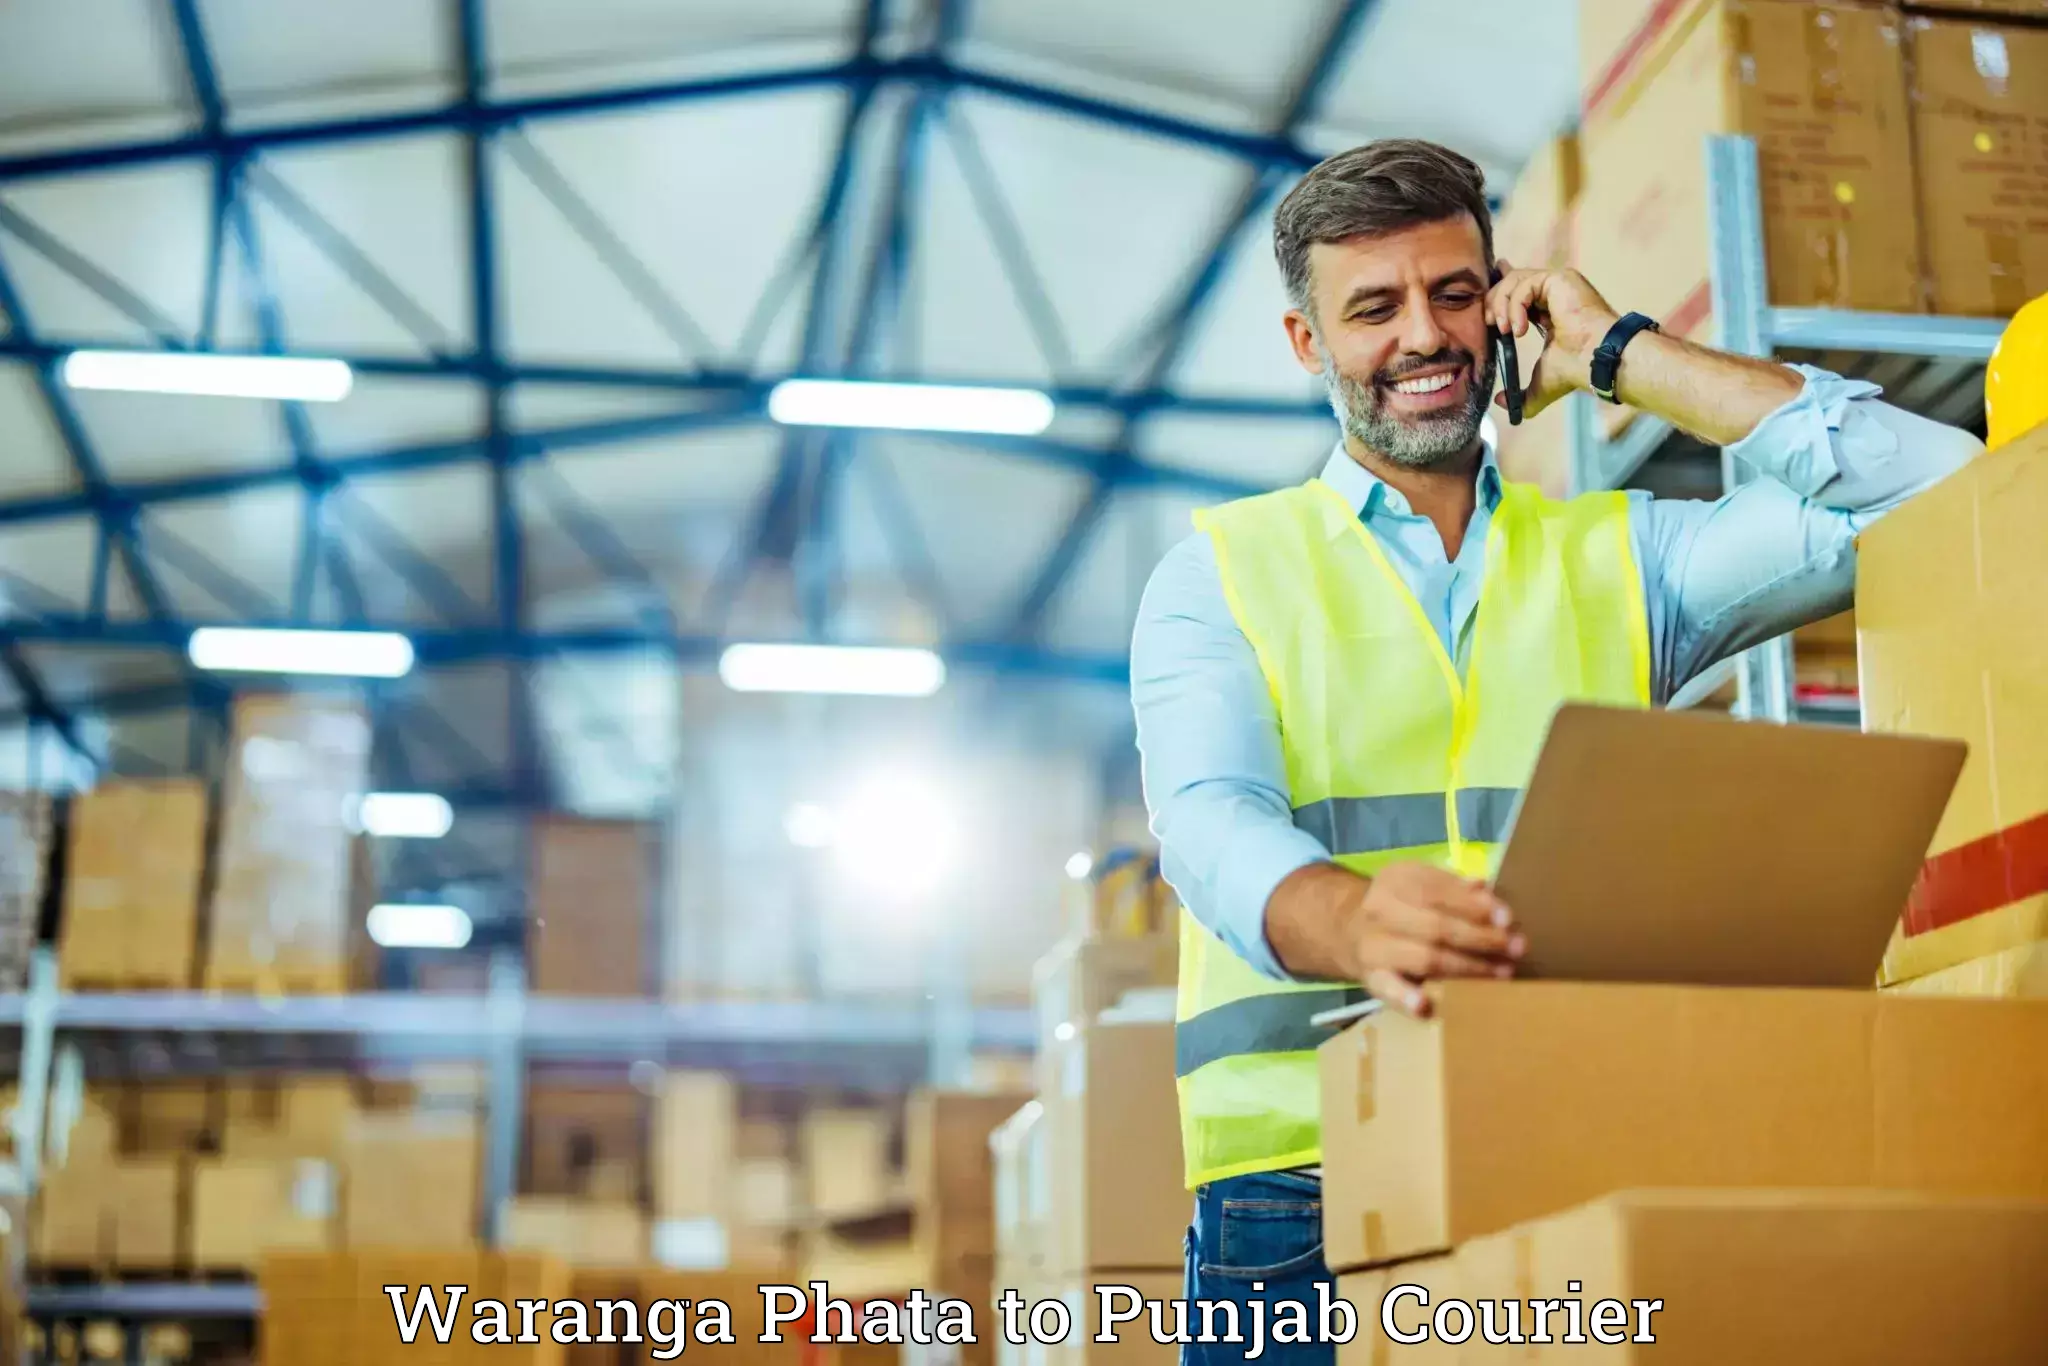 Luggage shipping planner Waranga Phata to Punjab